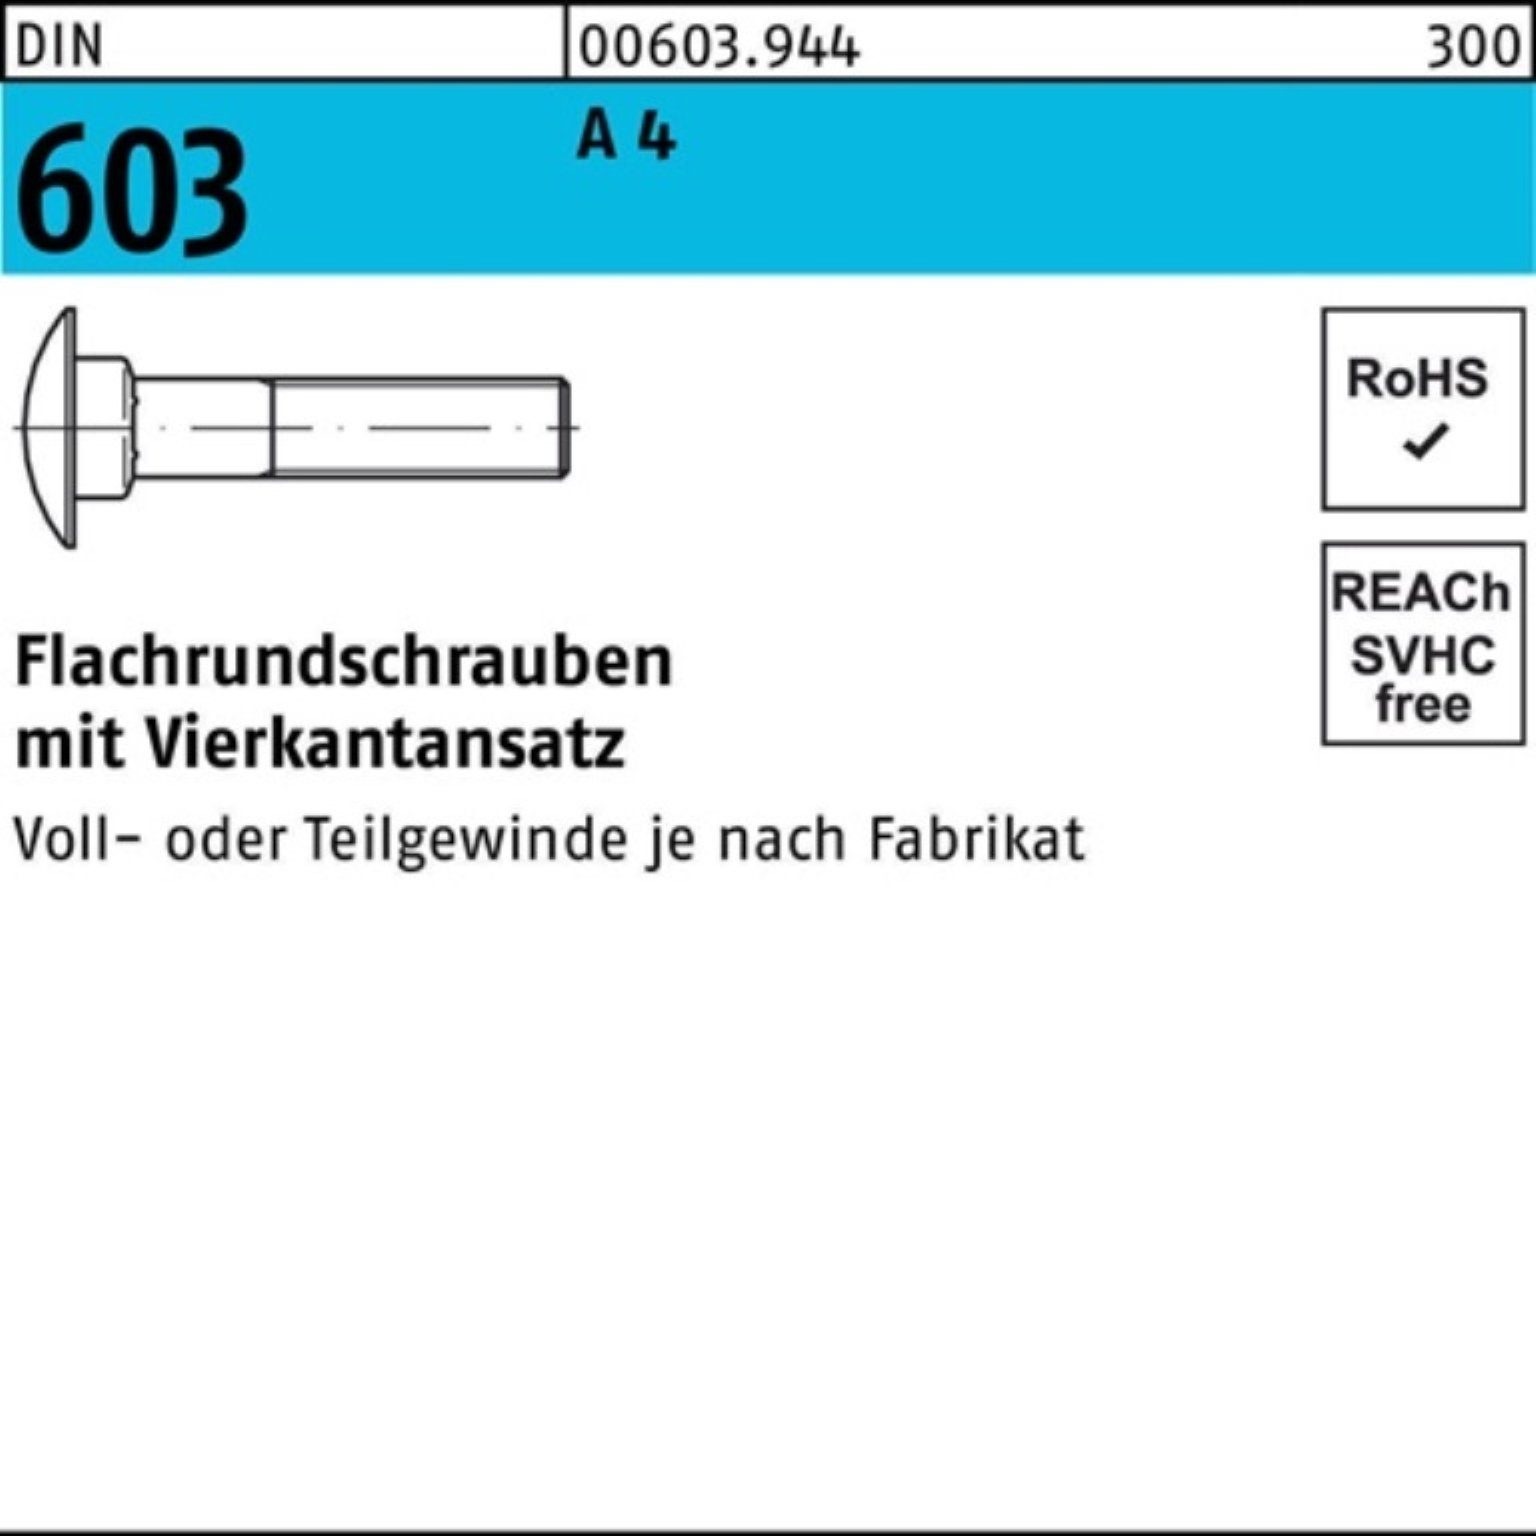 Schraube Vierkantansatz 603 M12x A 4 DIN 1 60 Flachrundschraube Pack Reyher Stü 100er